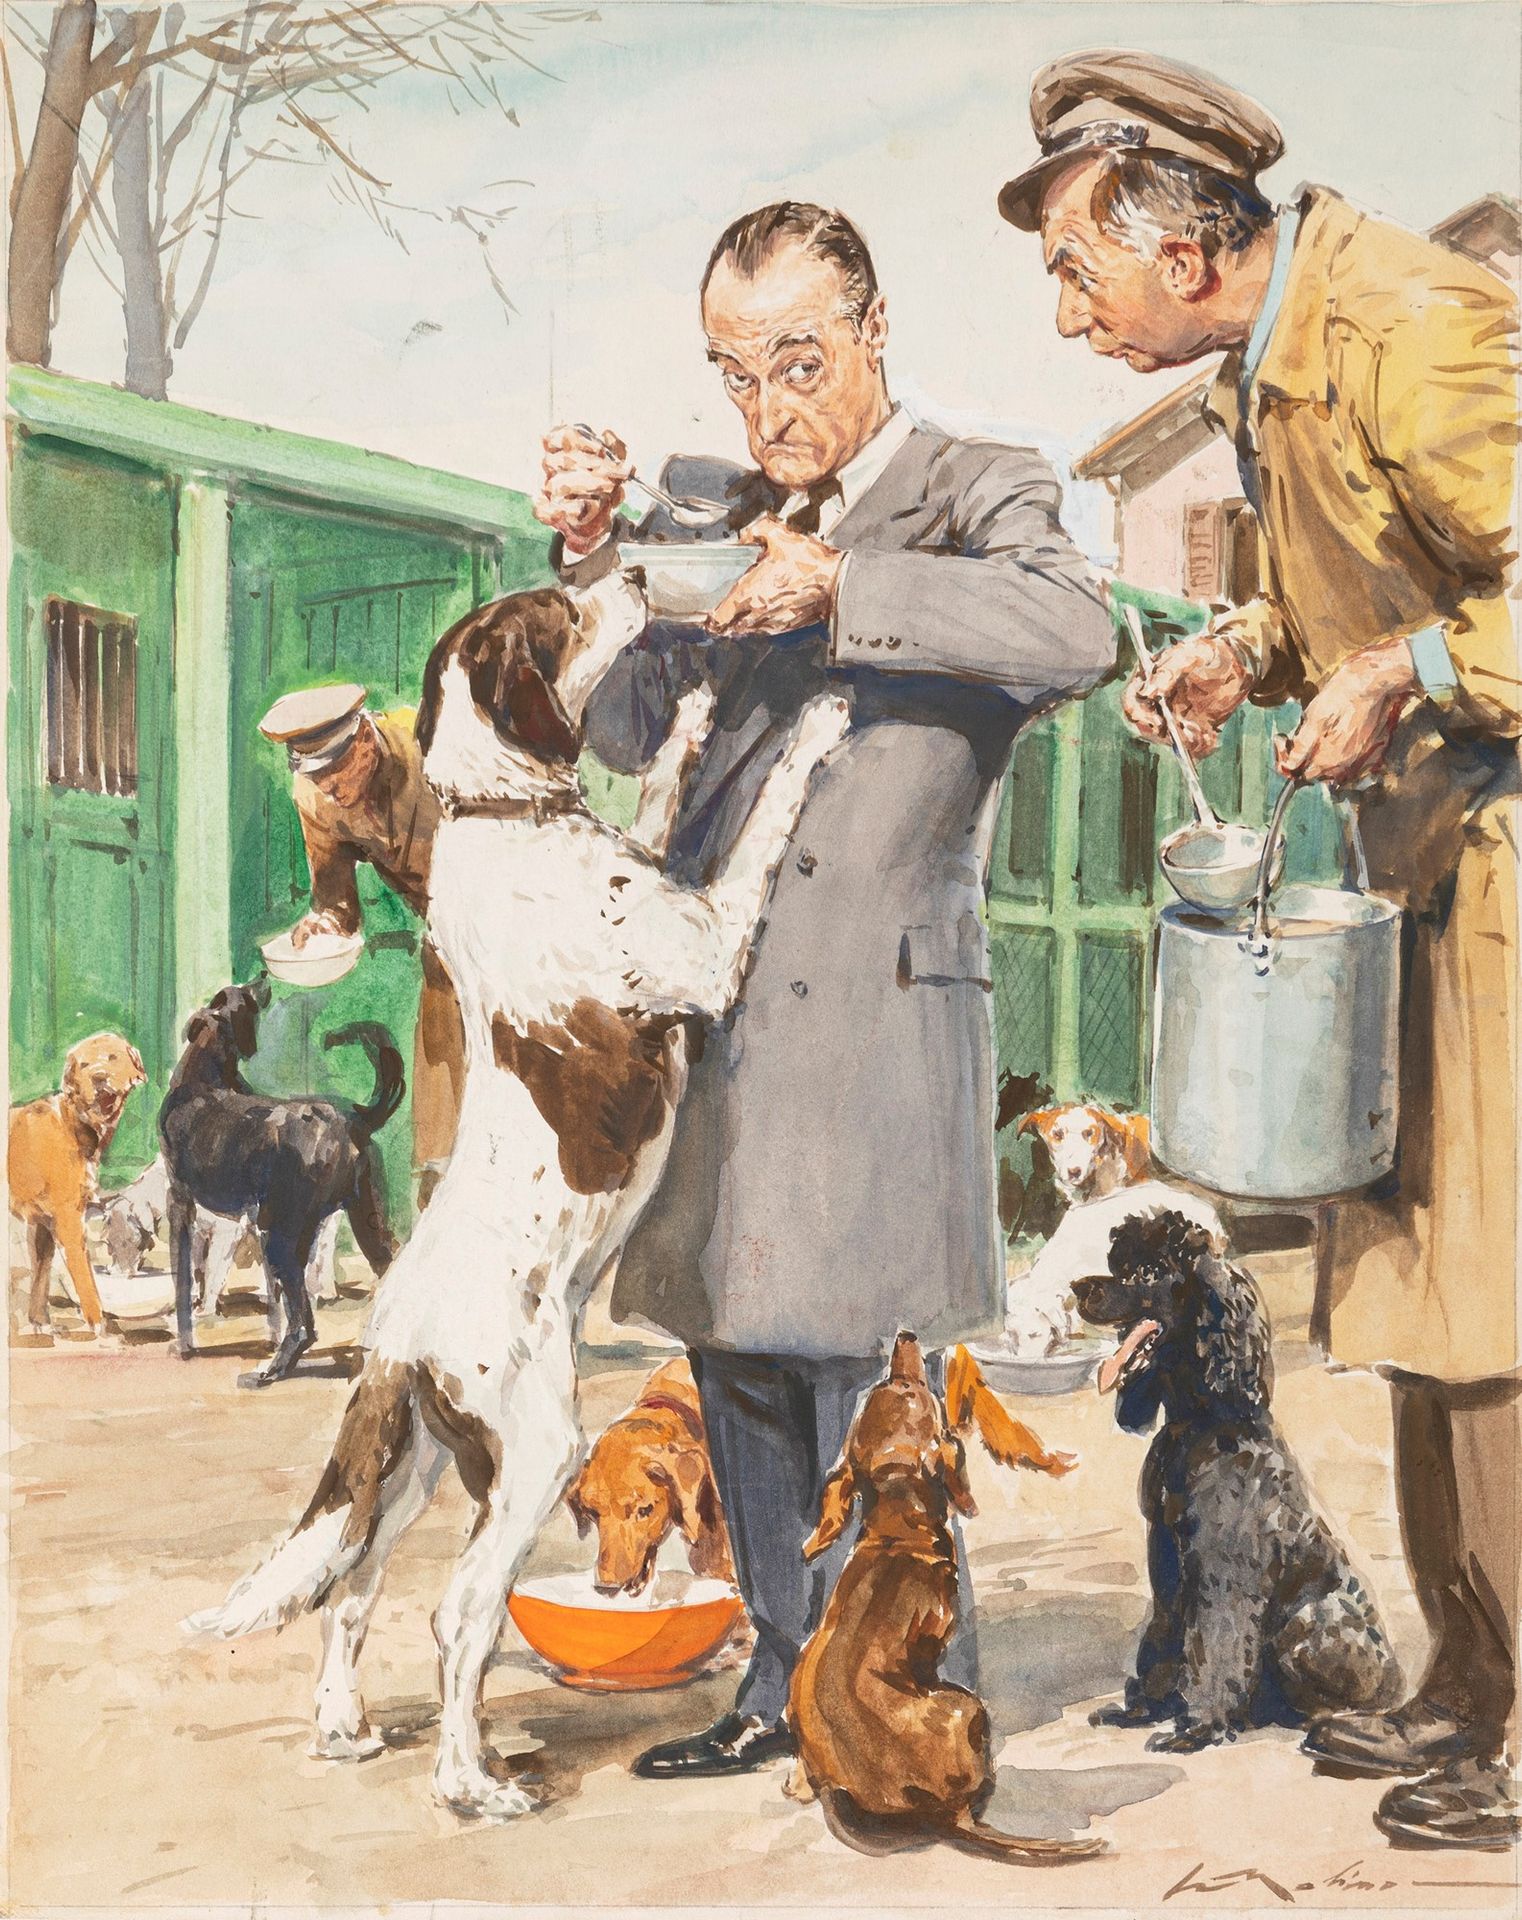 Walter Molino Totò e i suoi cani

tempera et aquarelle sur carton fin
26 x 32 cm&hellip;